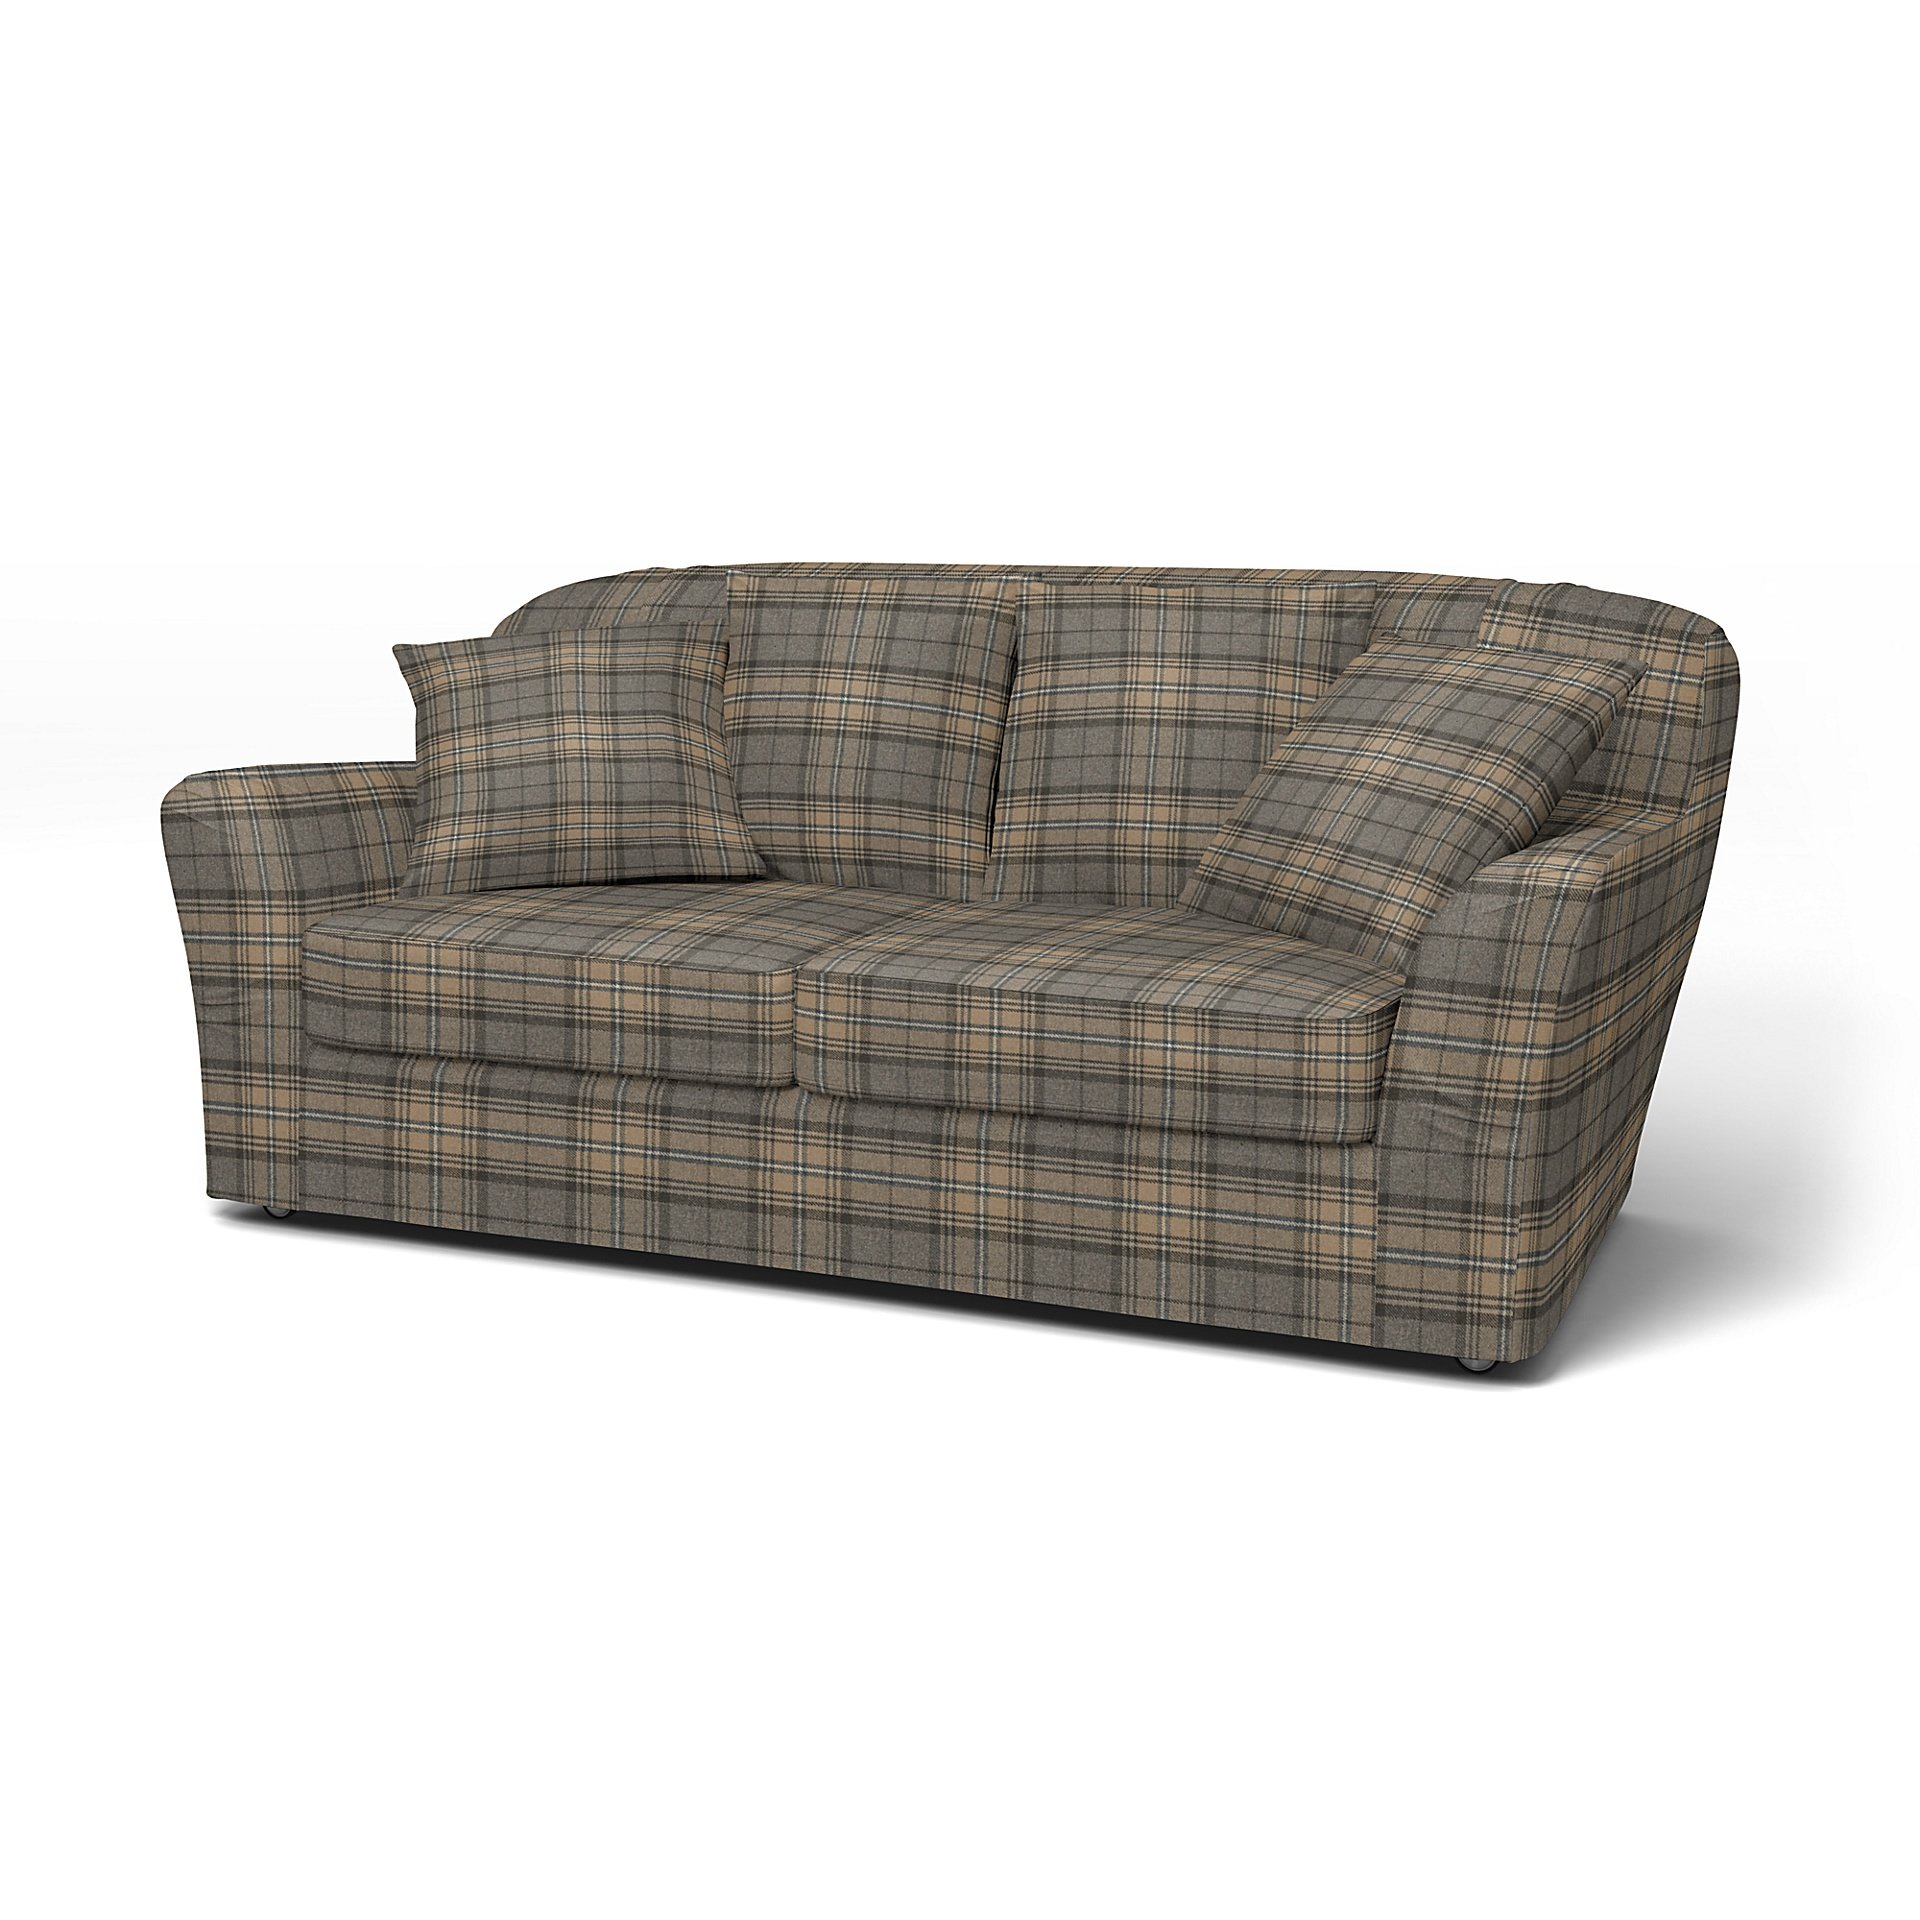 IKEA - Tomelilla 2 seater sofa, Bark Brown, Wool - Bemz